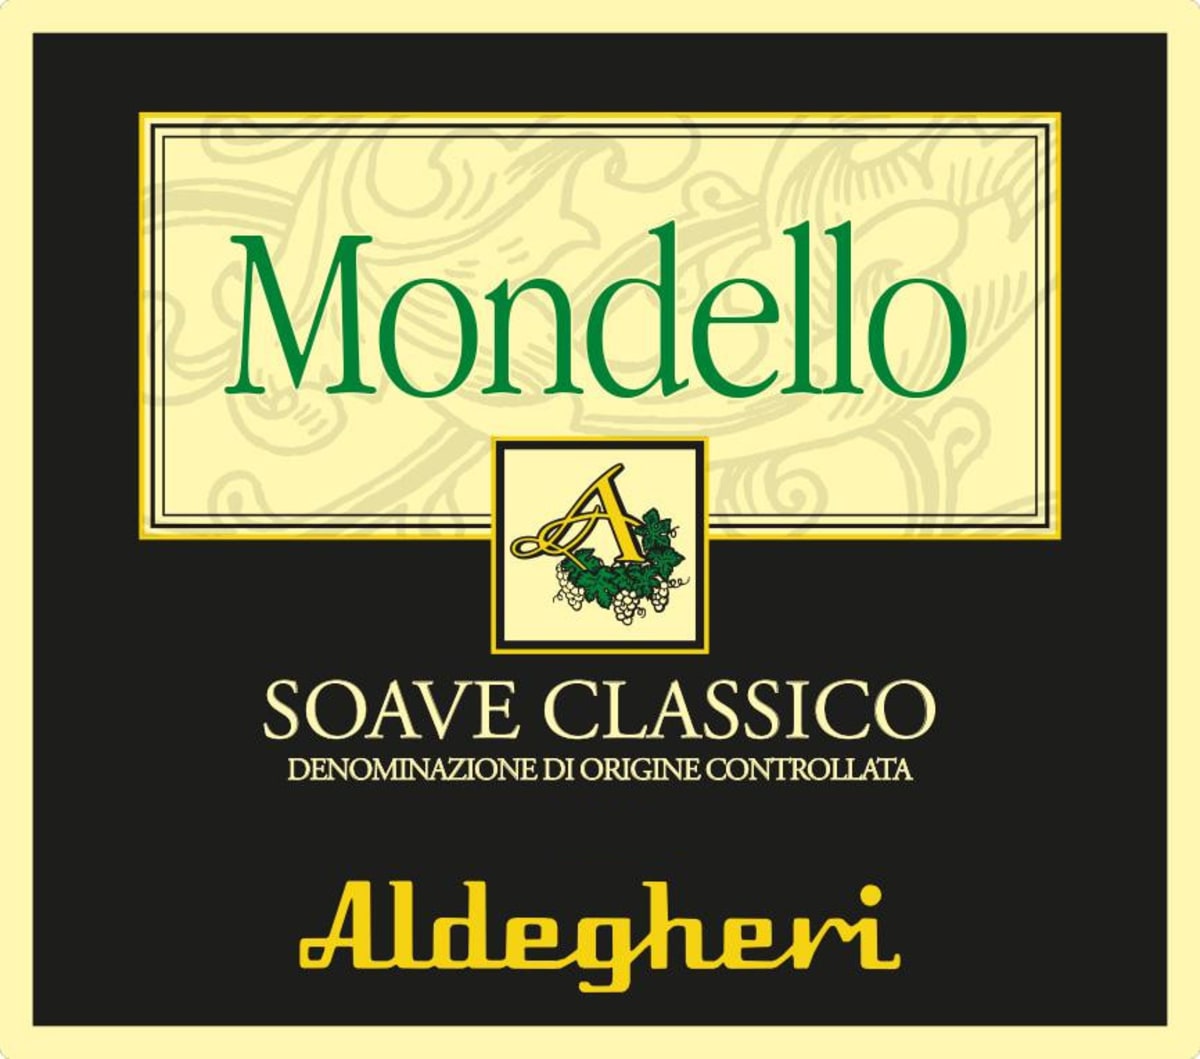 Cantine Aldegheri Soave Classico Mondello 2013 Front Label